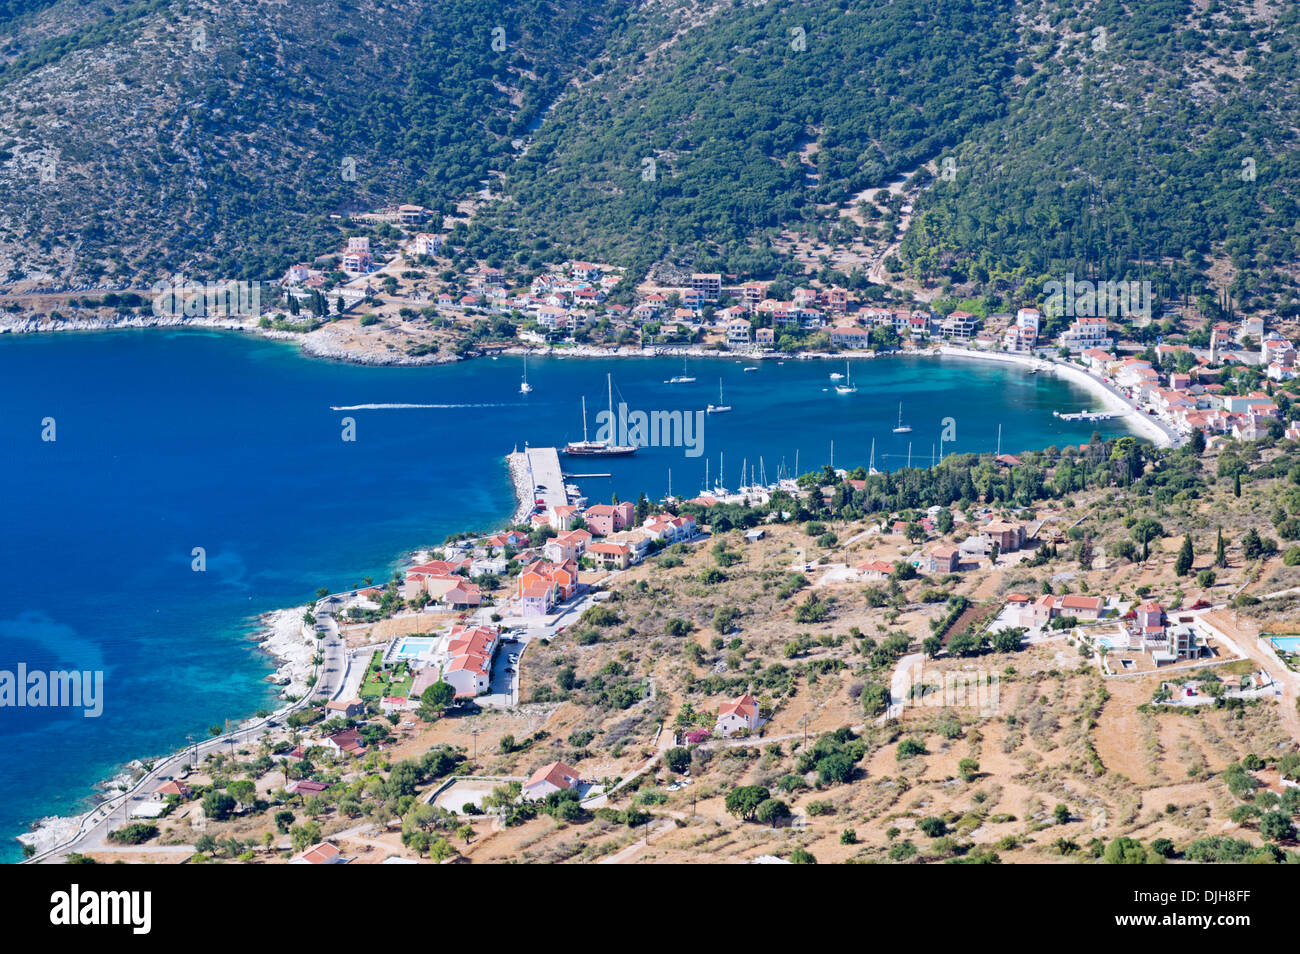 Kefalonia Greece - the resort town of Agia Efimia Stock Photo